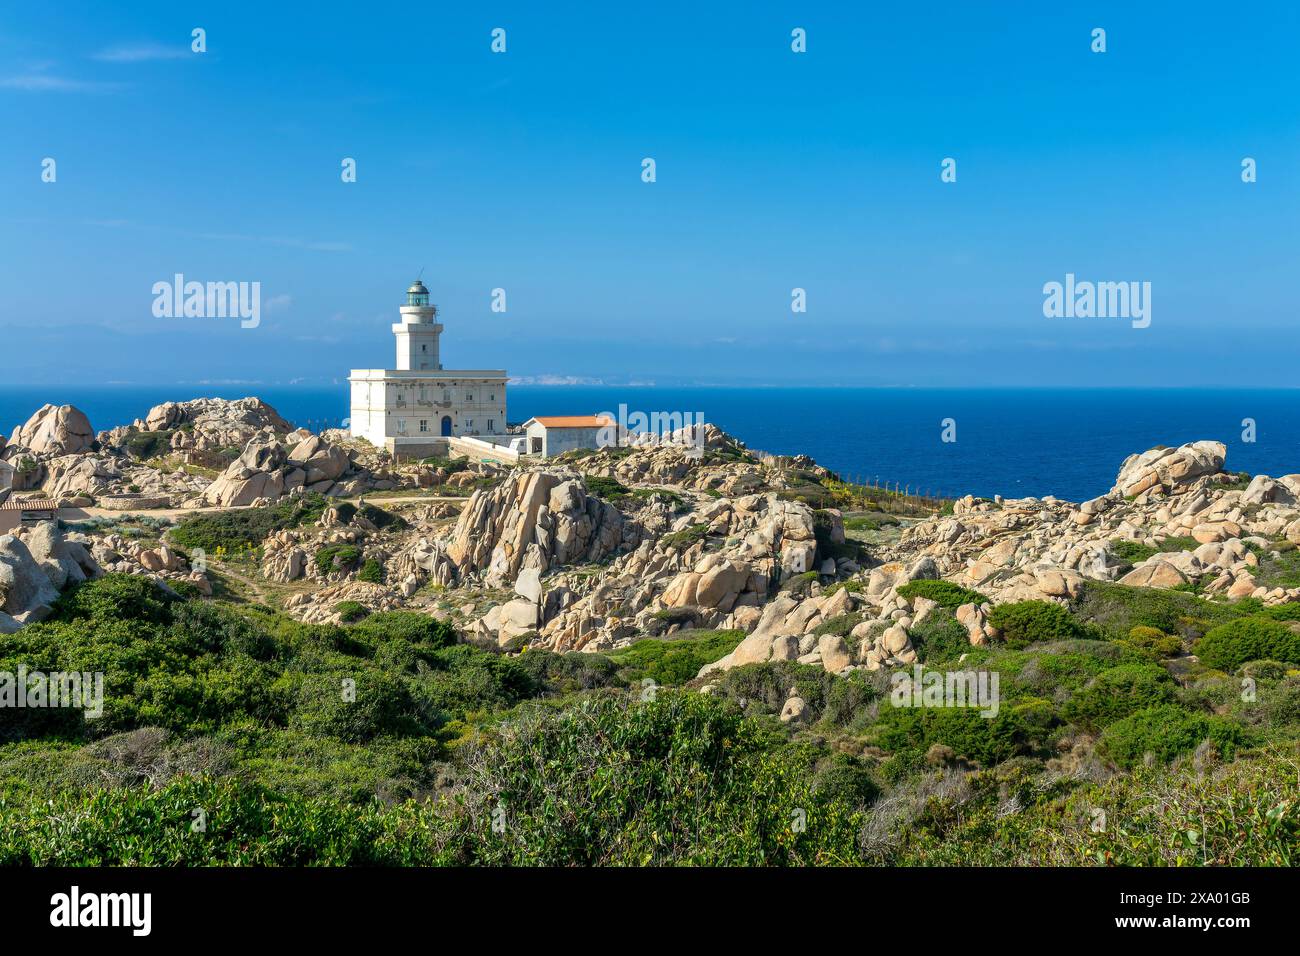 Der Leuchtturm Capo Testa und die mittelmeerküste und das Meer mit wunderschönen Felsen, die Landschaft Sardiniens Stockfoto